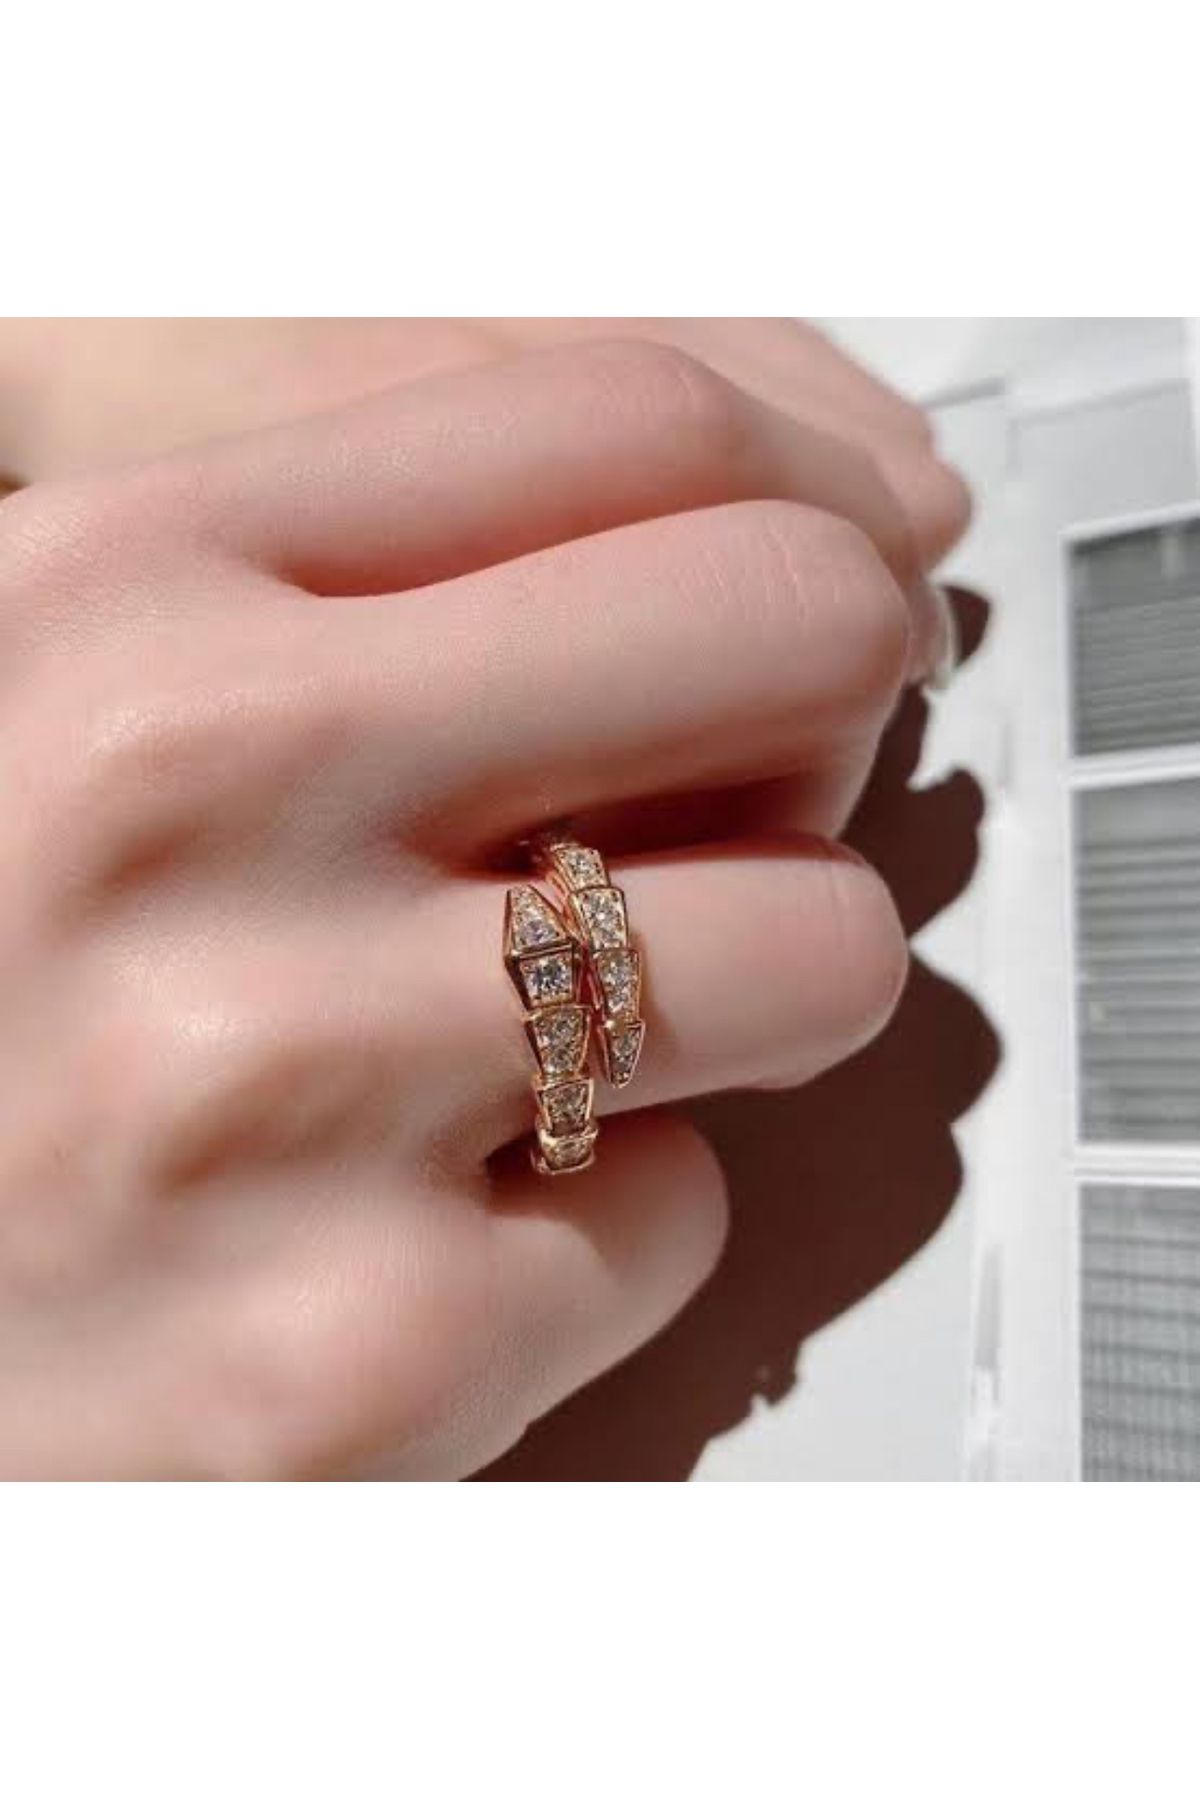 FASHİON JEWELRY En trend modellerden şık,zarif ışıltılı yüzüğümüz?